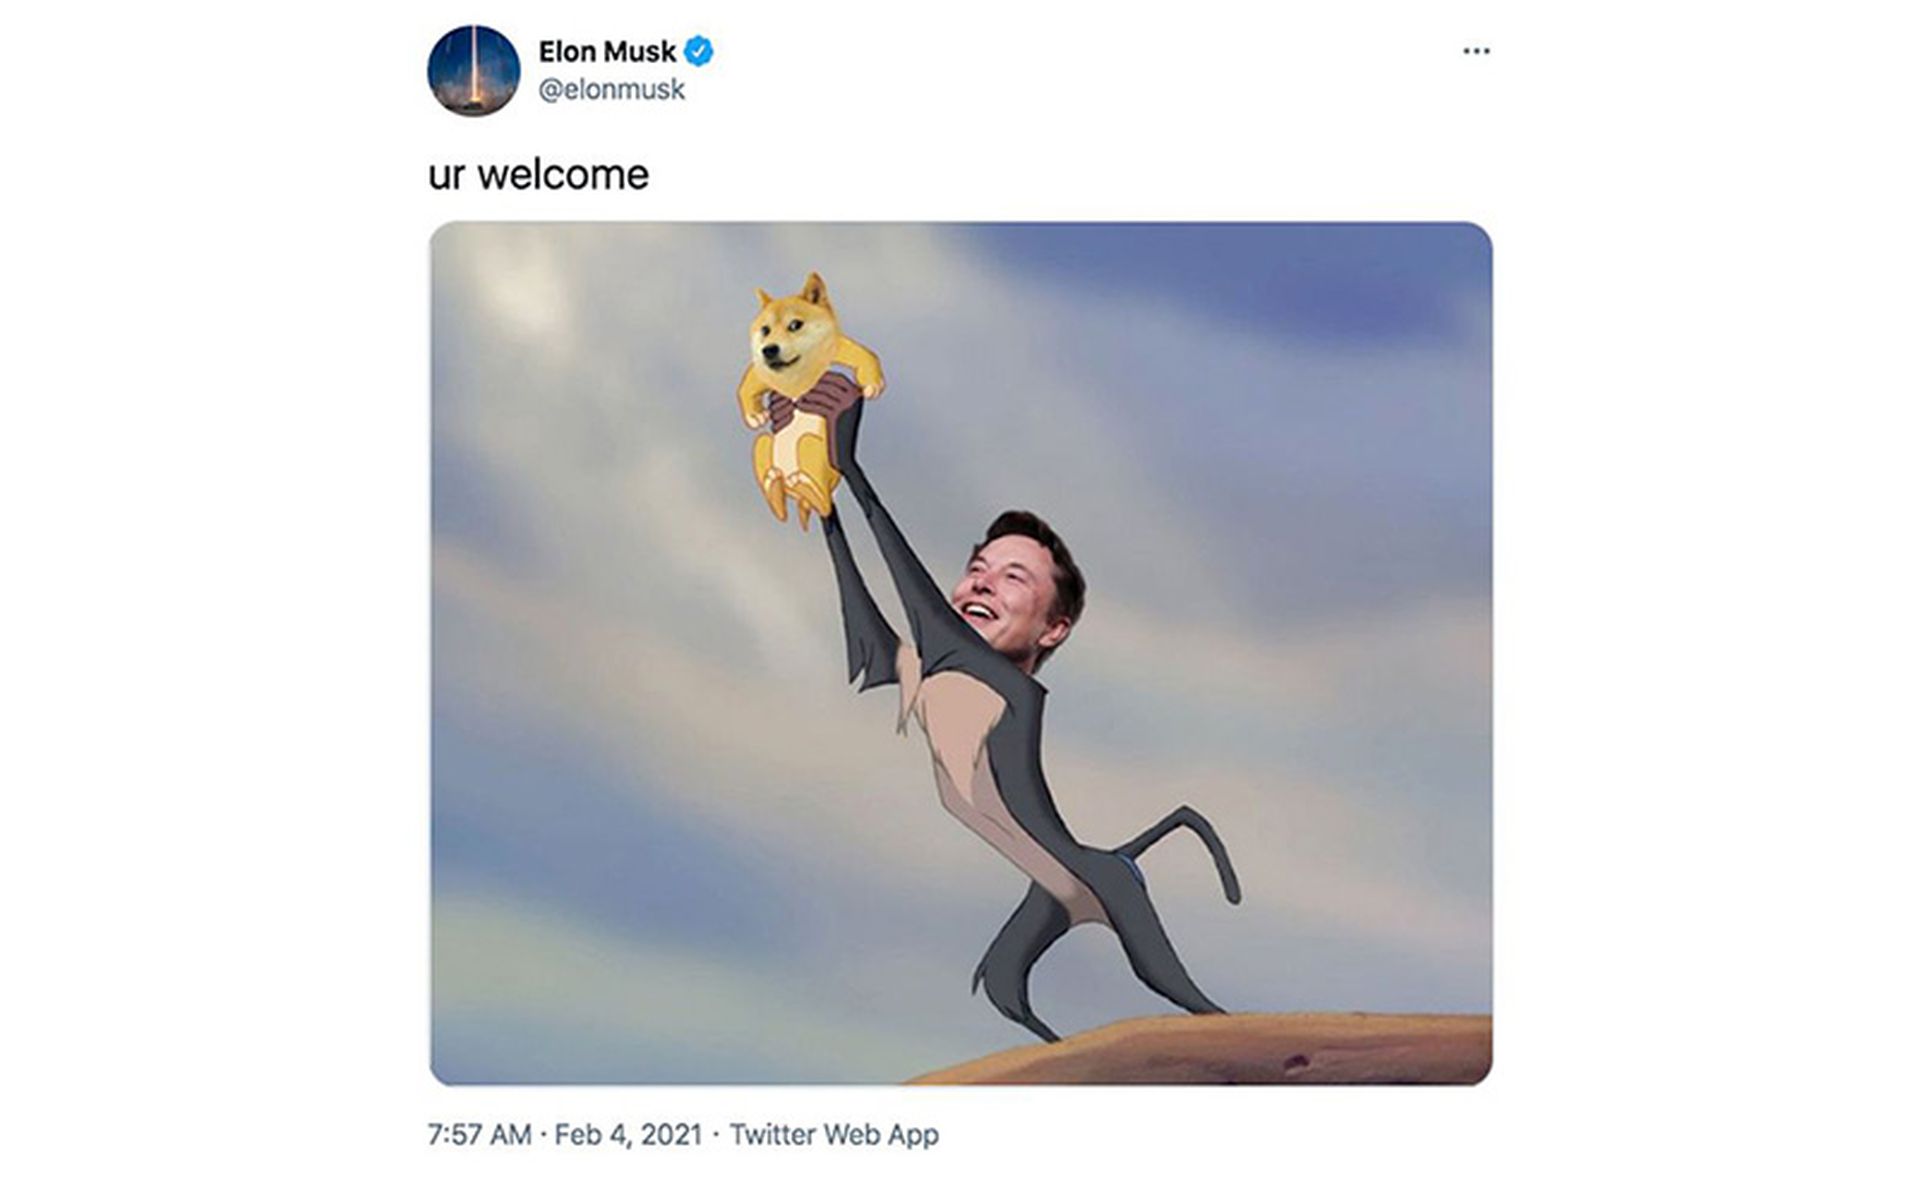 weiterer Elon Musk Dogecoin Tweet